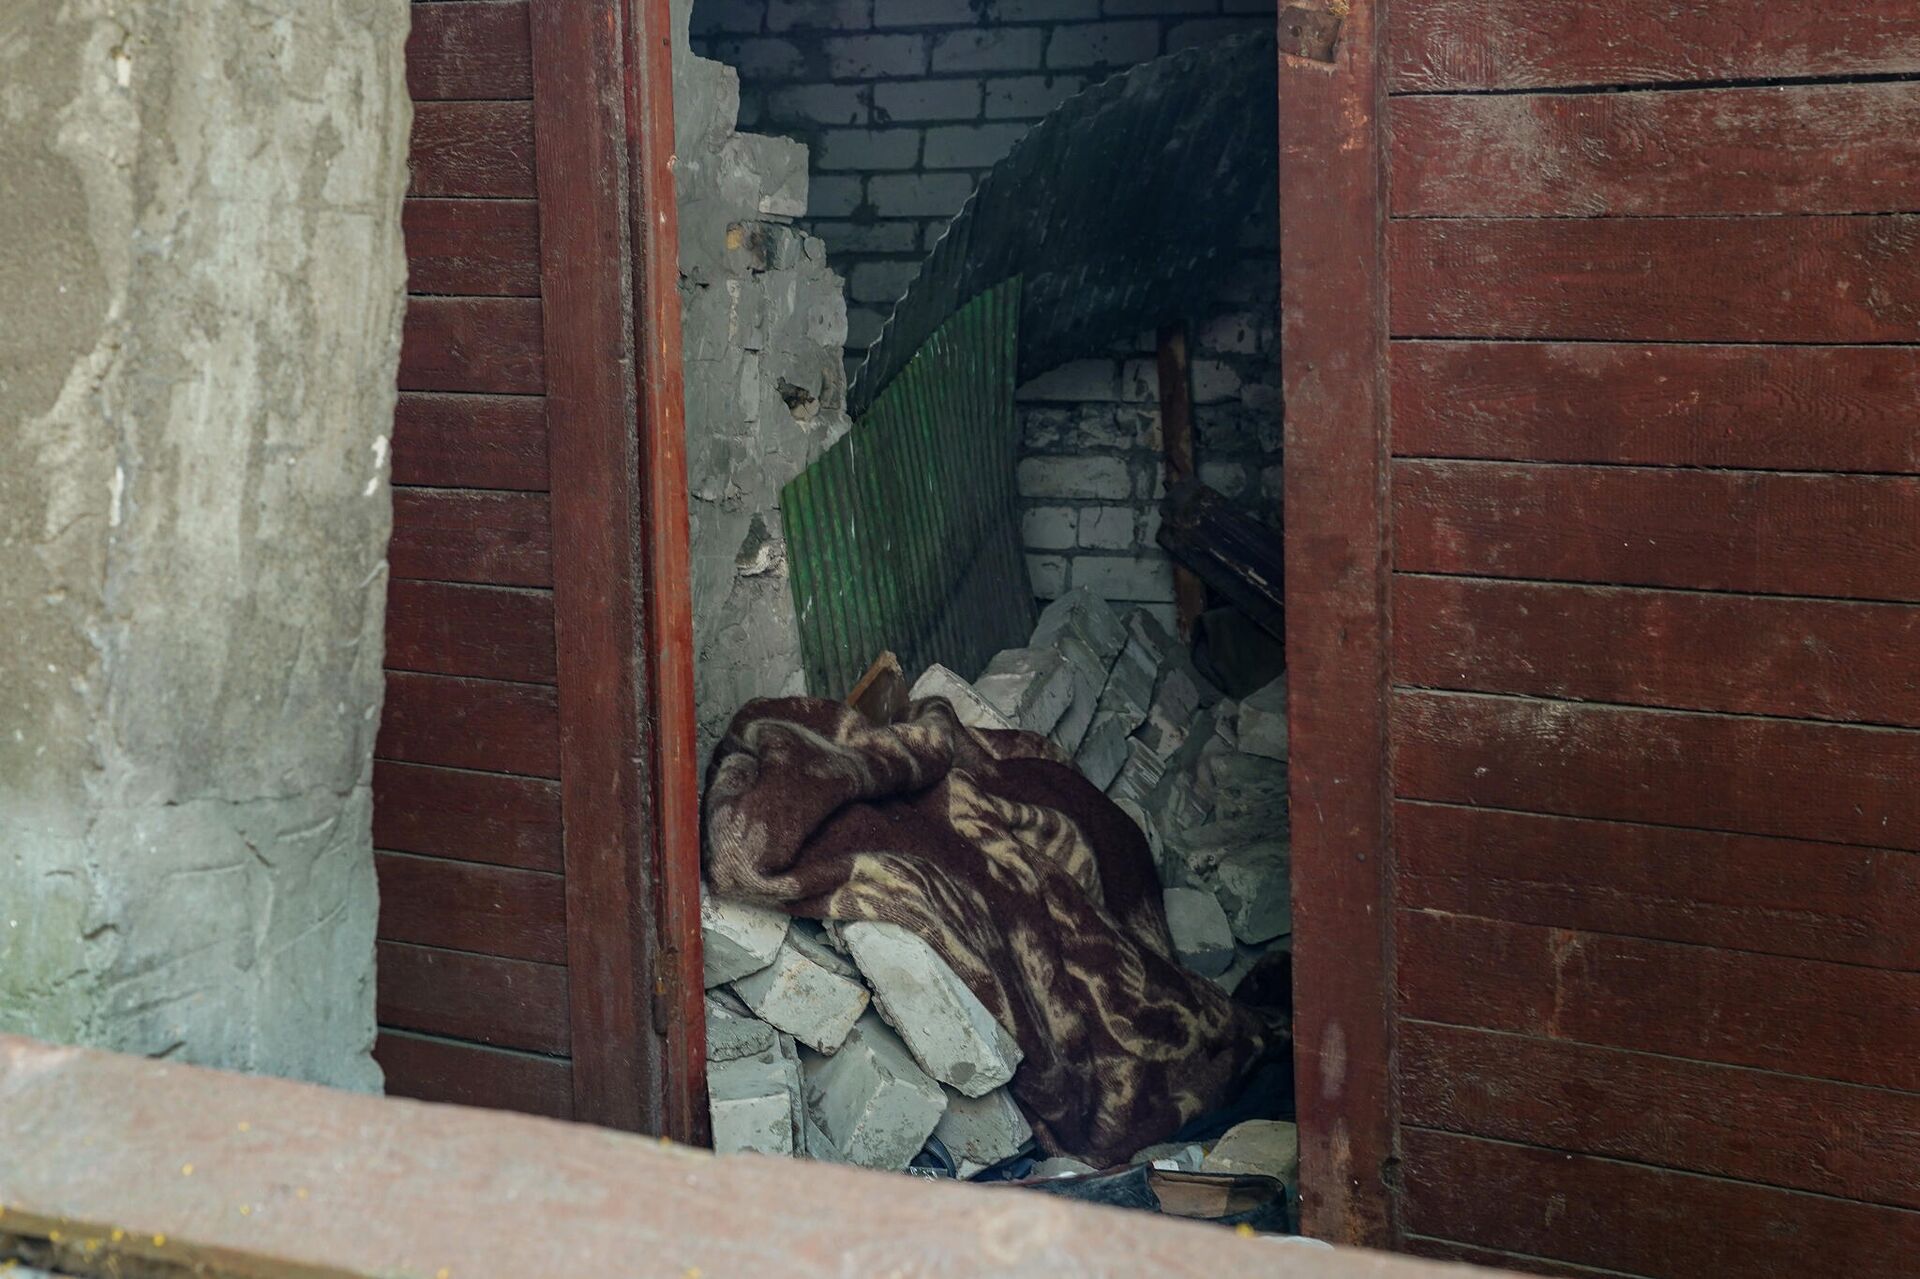 Хозпостройка на улице Матиса, где обрушившаяся стена придавила мужчину - Sputnik Латвия, 1920, 06.07.2021